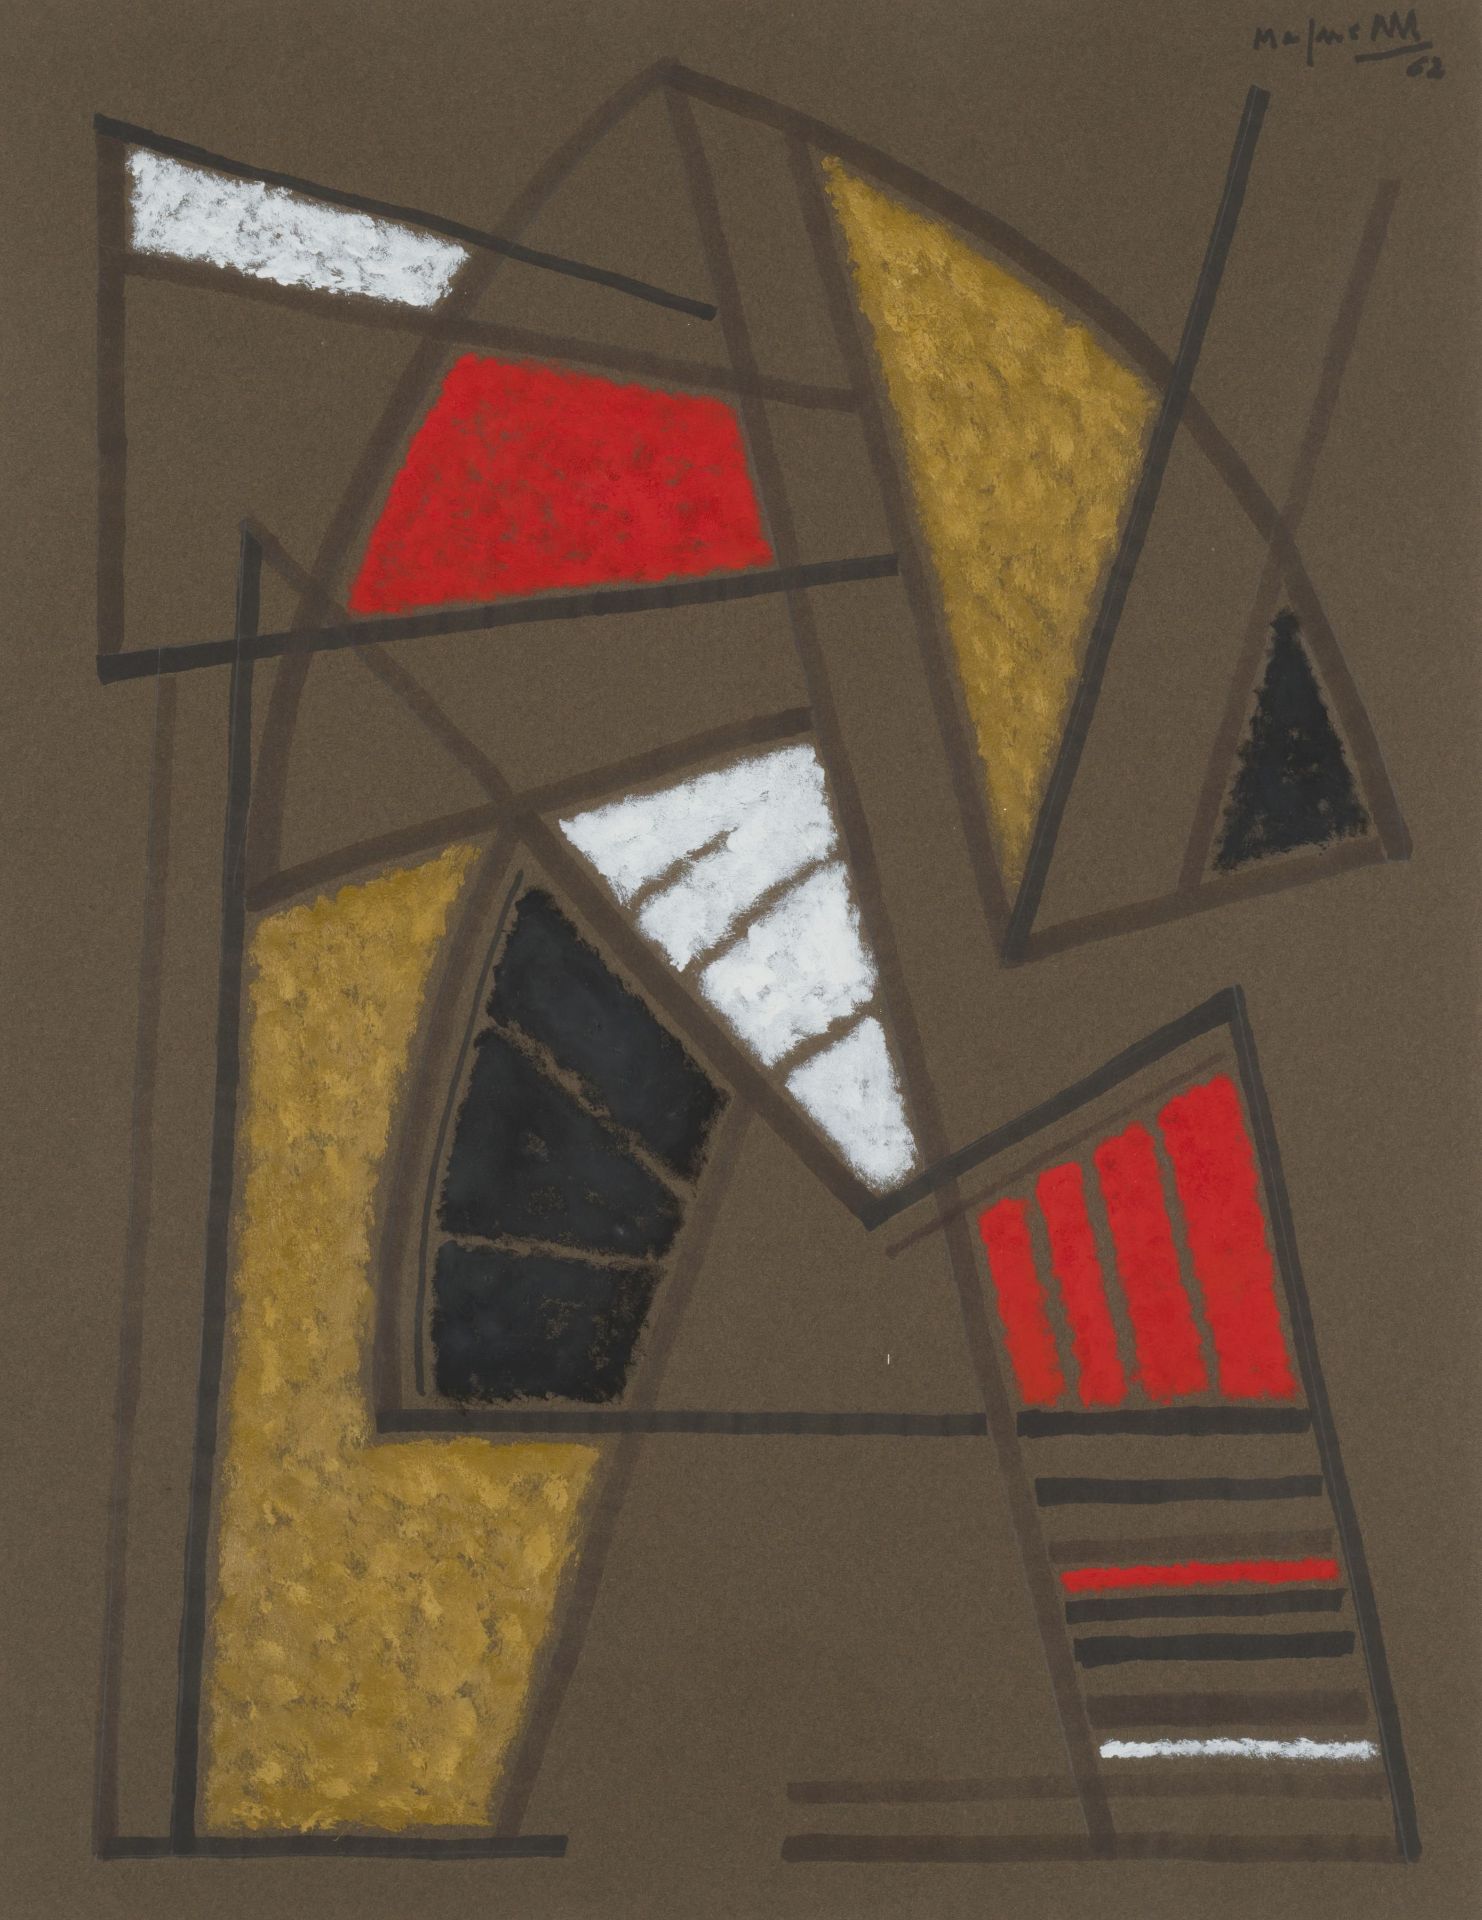 ALBERTO MAGNELLI (1888-1971) Composition abstraite